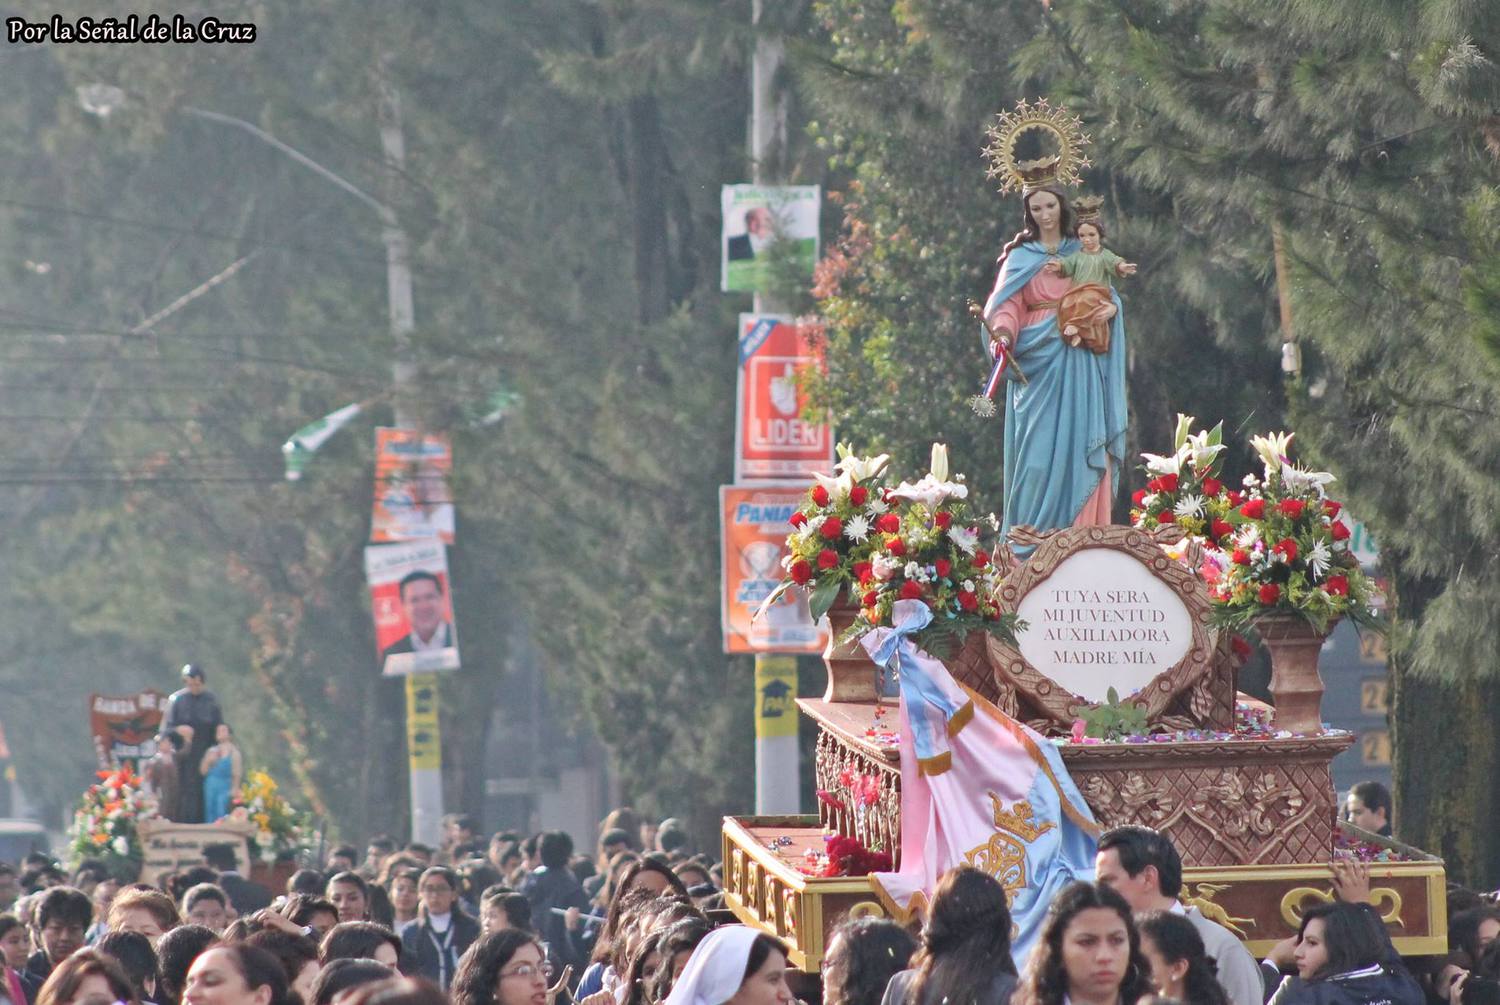 Festividad de Maria Auxiliadora en San Nicolás, Quetzaltenango